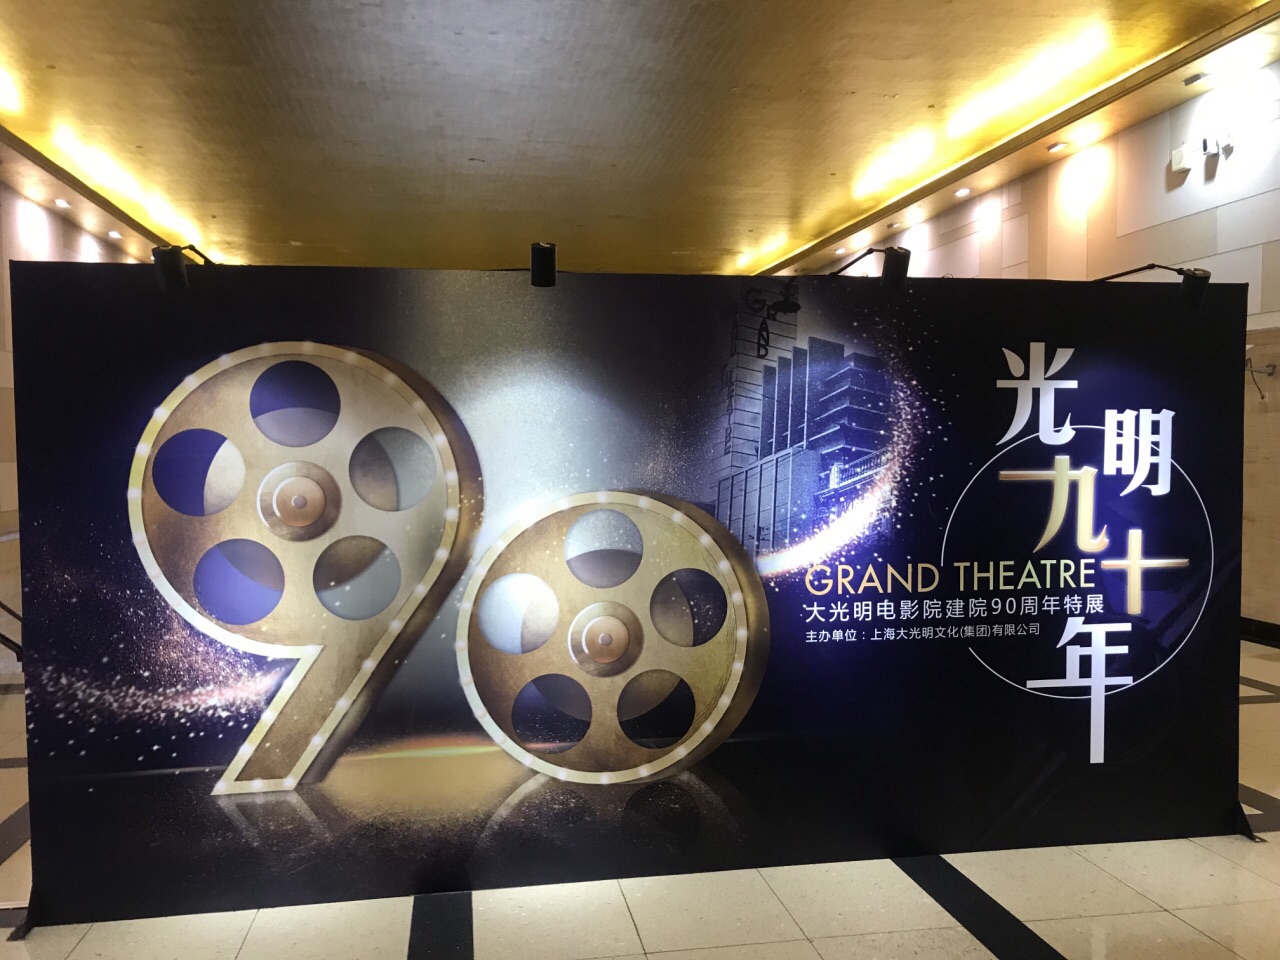 大光明电影院 -上海市文旅推广网-上海市文化和旅游局 提供专业文化和旅游及会展信息资讯